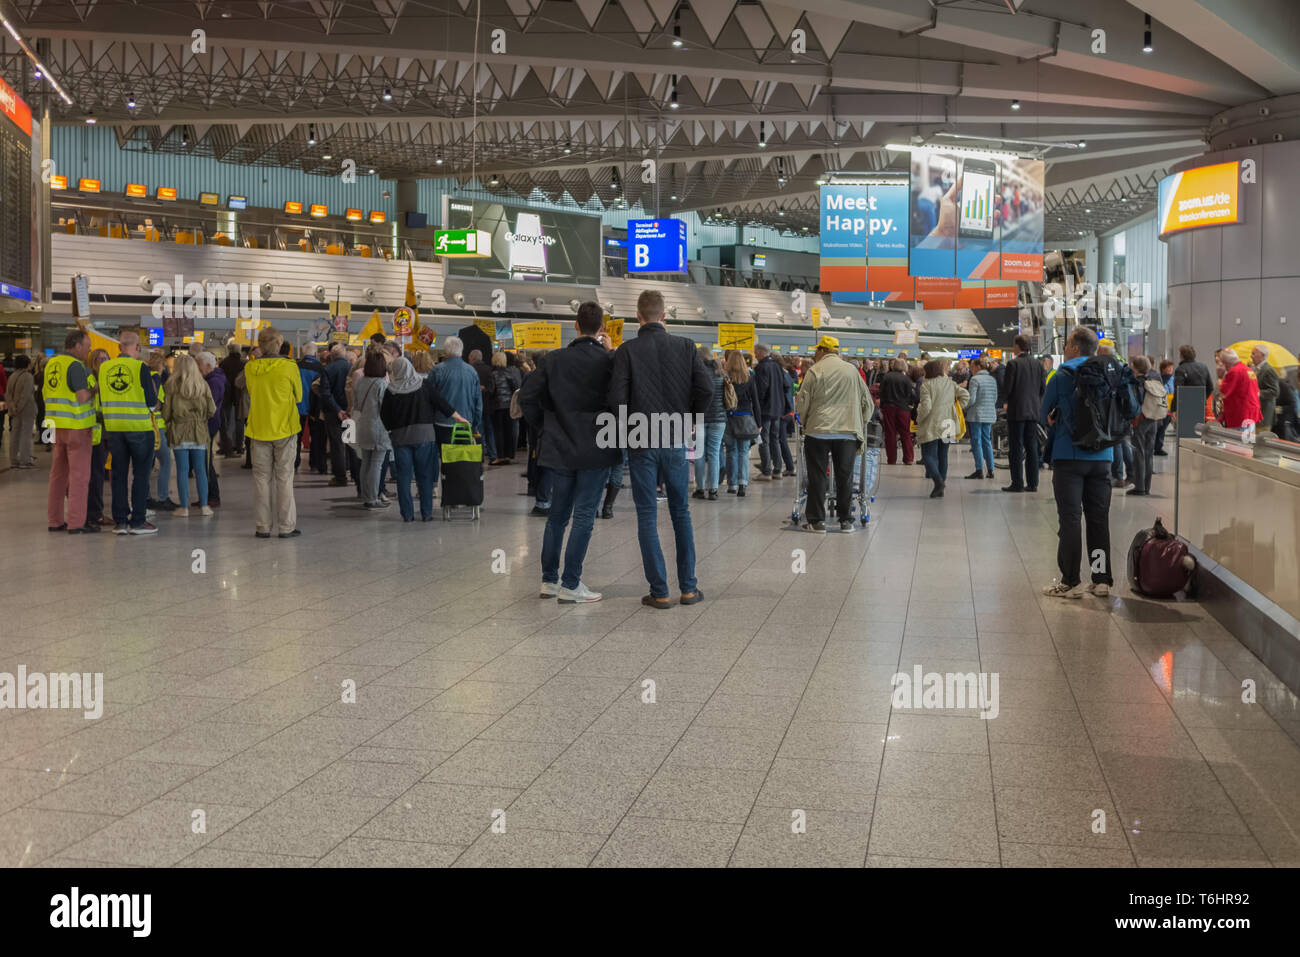 Francfort, Allemagne - AVRIL 08,2019:aéroport de la borne 1 d'un petit groupe de personnes manifestaient contre l'avaiation de bruit de la zone de l'aéroport. Banque D'Images